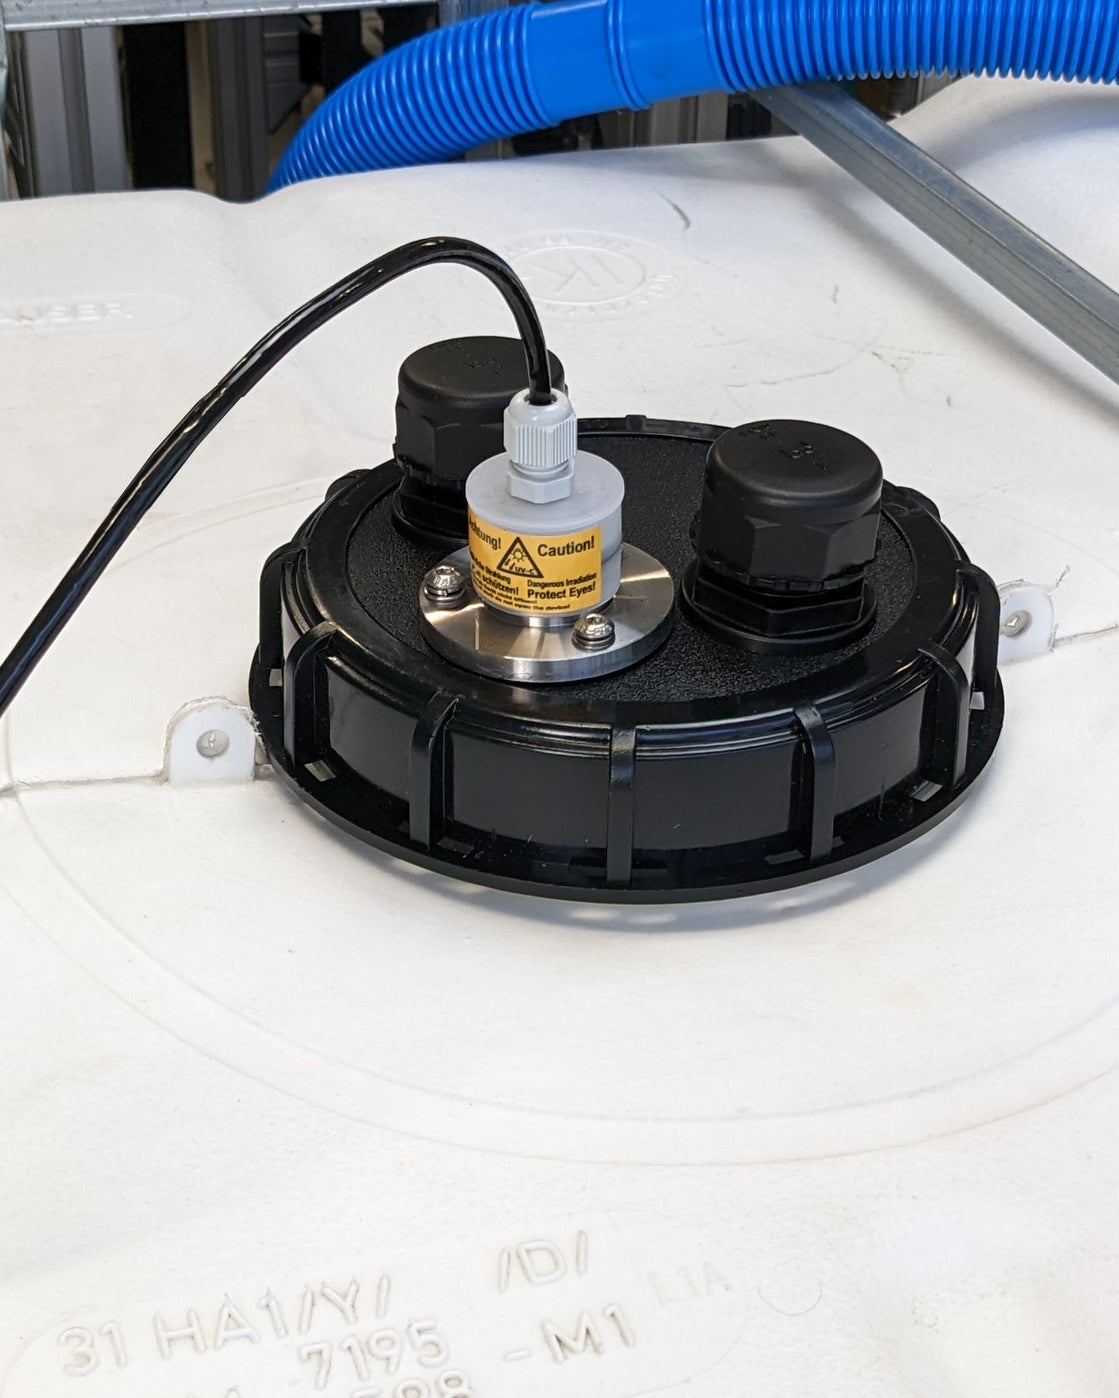 Eine Maschine der UV Concept GmbH, ausgestattet mit einem daran befestigten Schlauch, konzipiert für die Entfernung von Verkeimungen (Kontaminationen) mit effizienten Durchflussanlagen (Durchflusssystemen) wie PURION IBC DN150 17W SPL BS OTC 12 V/24 V.